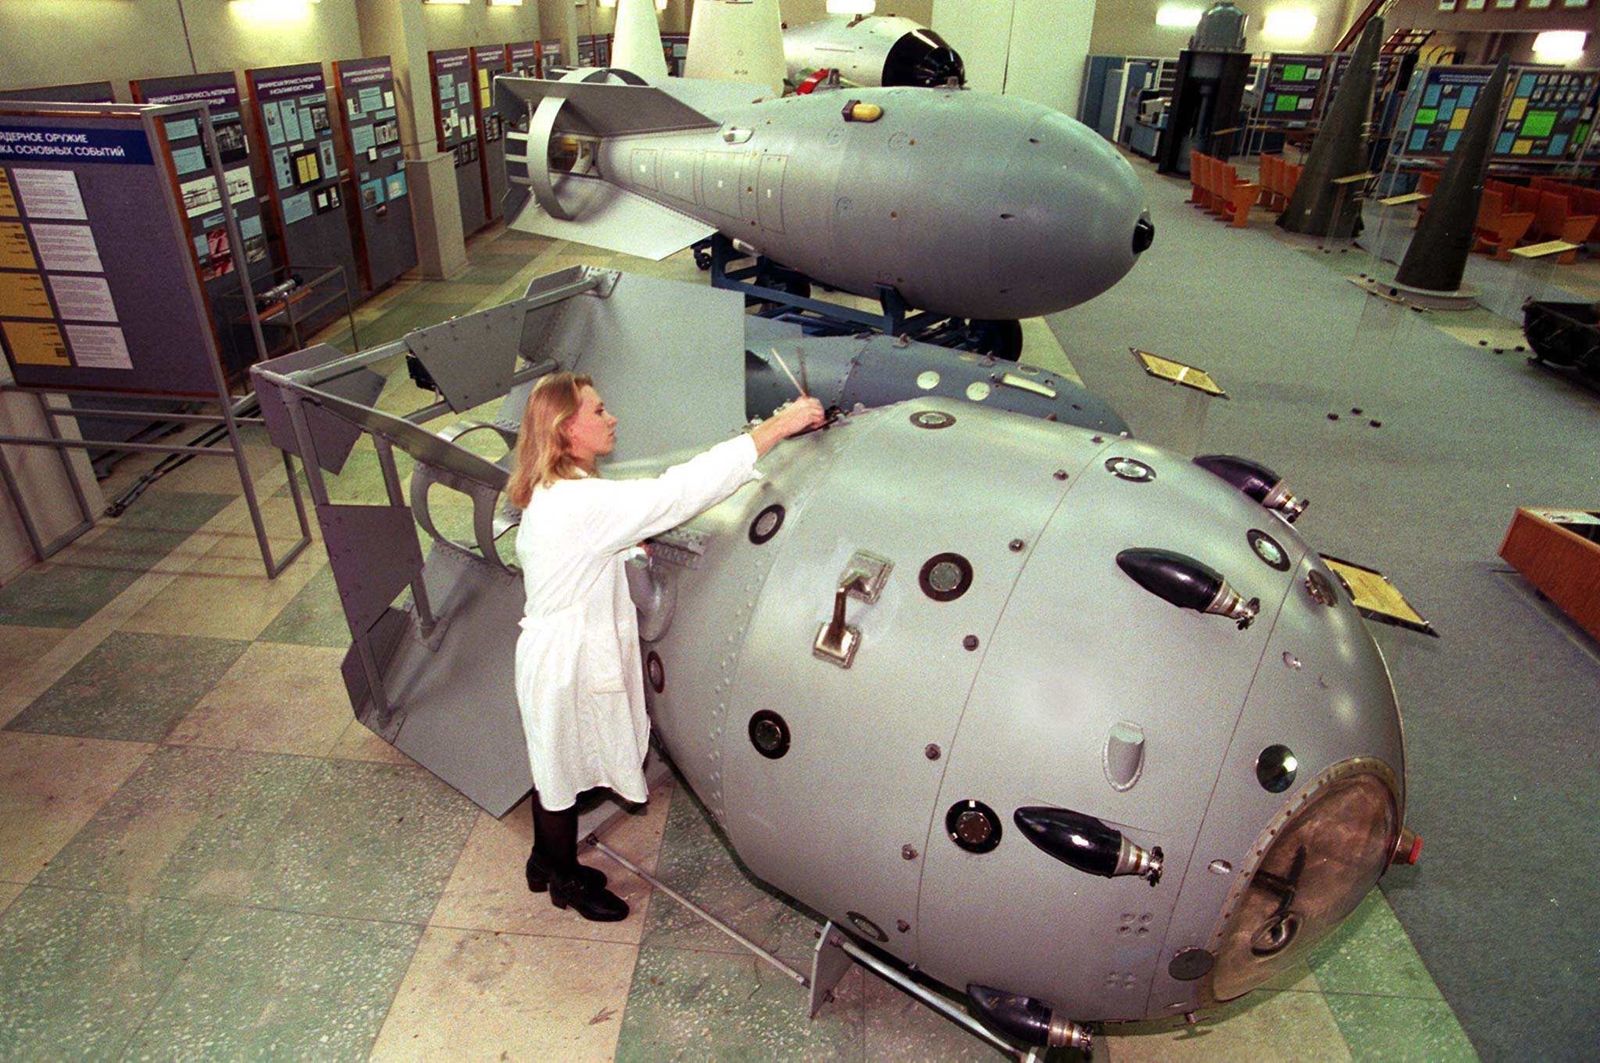 AFP-พิพิธภัณฑ์นิวเคลียร์ในเมืองซารอฟ รัสเซีย ก่อตั้งขึ้นตั้งแต่ปี 1992 รวบรวมอาวุธนิวเคลียร์สมัยสหภาพโซเวียต.jpg